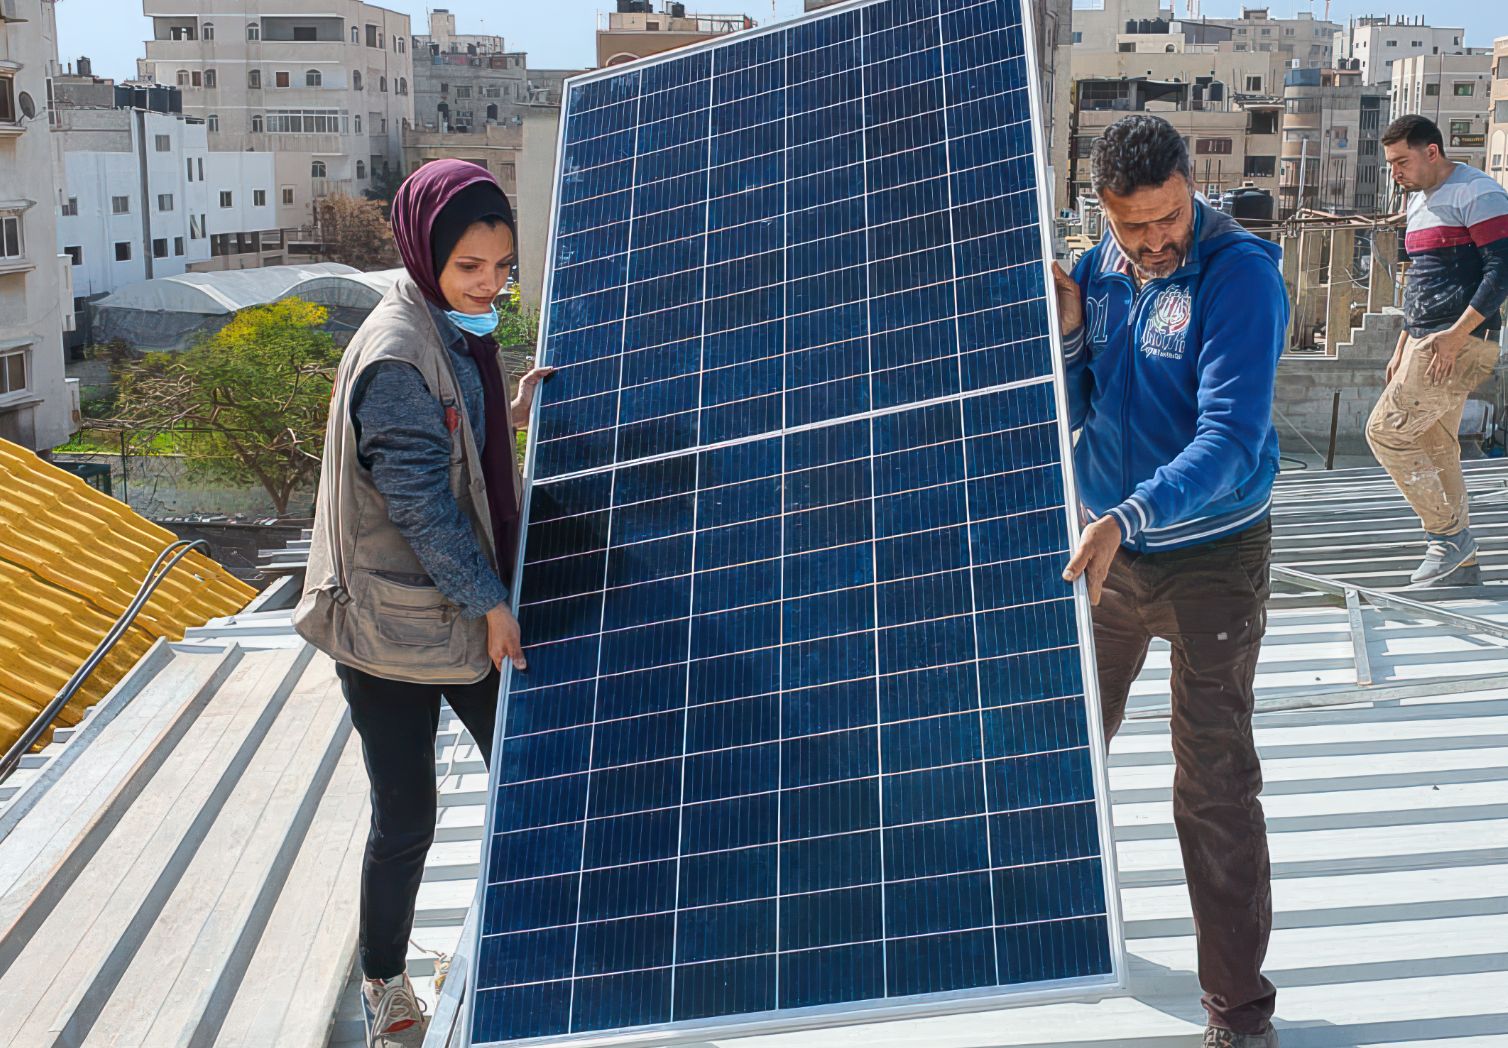 Foto: Eine Frau mit Kopftuch und ein Mann befinden sich auf dem Dach eines Hauses uns tragen gemeinsam ein großes Solarpaneel. 